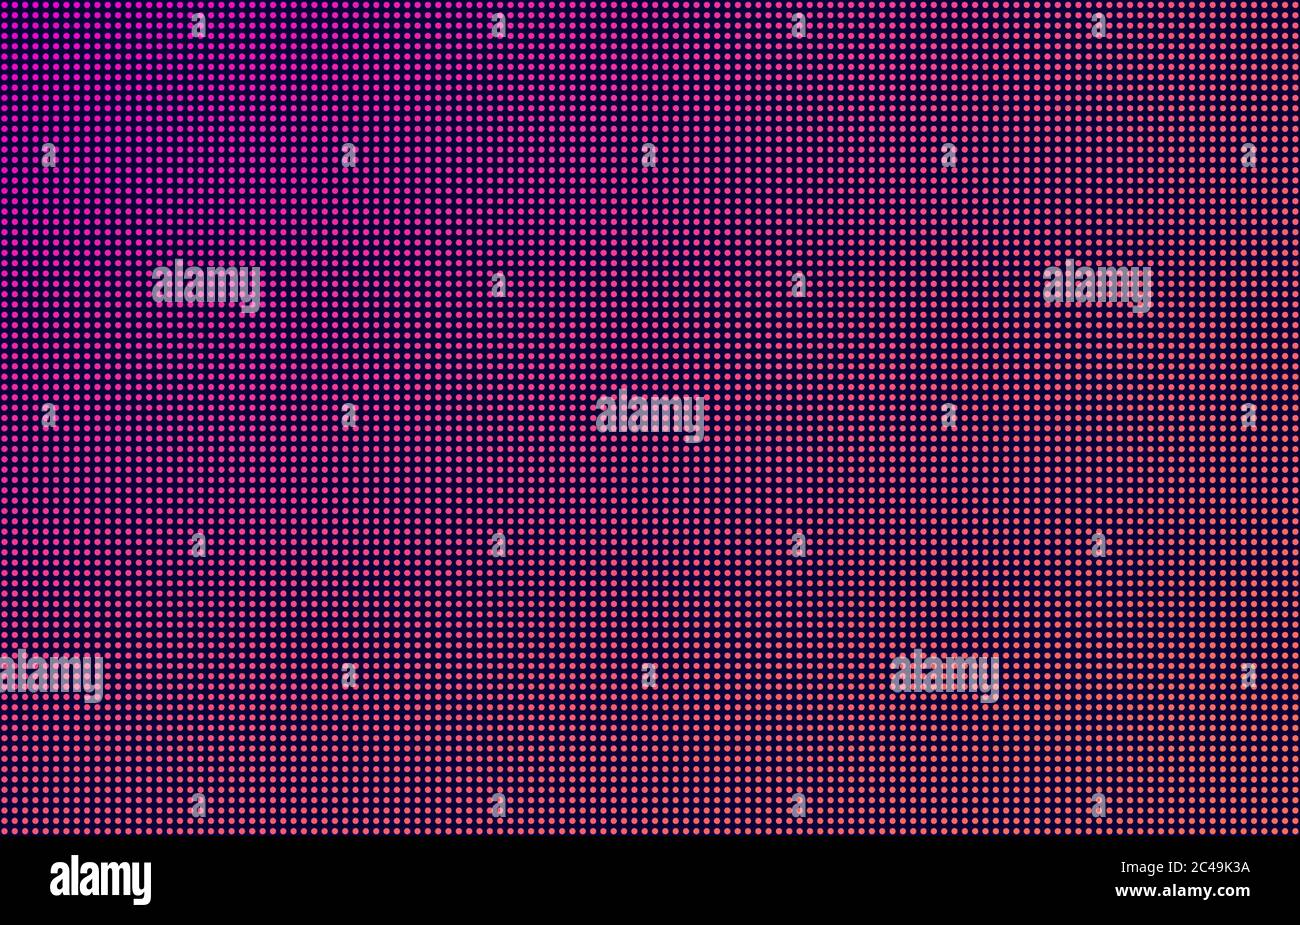 LED-Bildschirm Verlauf Hintergrund, rosa und orange Monitor Punkte. Nahaufnahme der Makrotextur des Displays. Stock Vektor